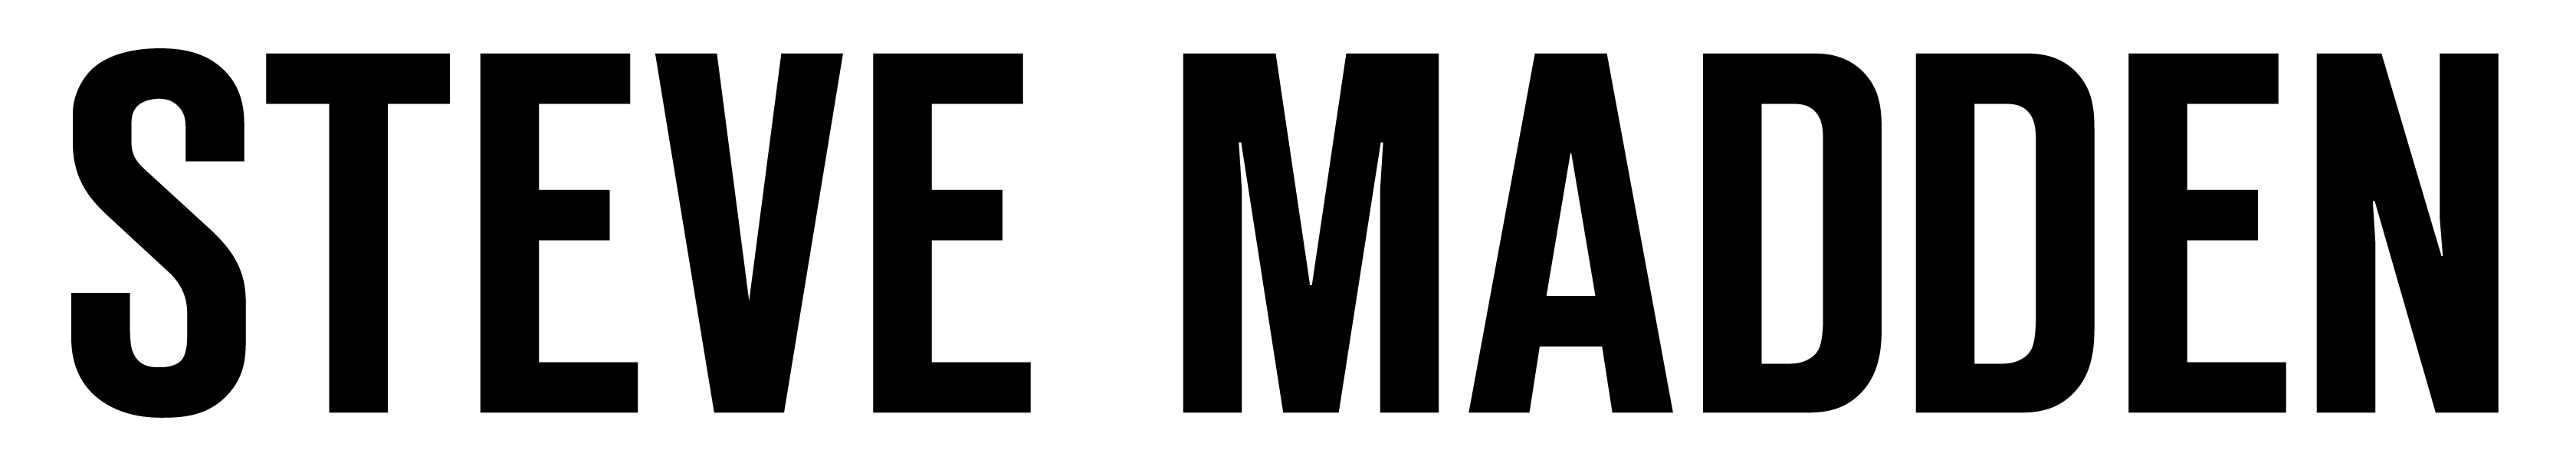 Steve Madden logo.jpg